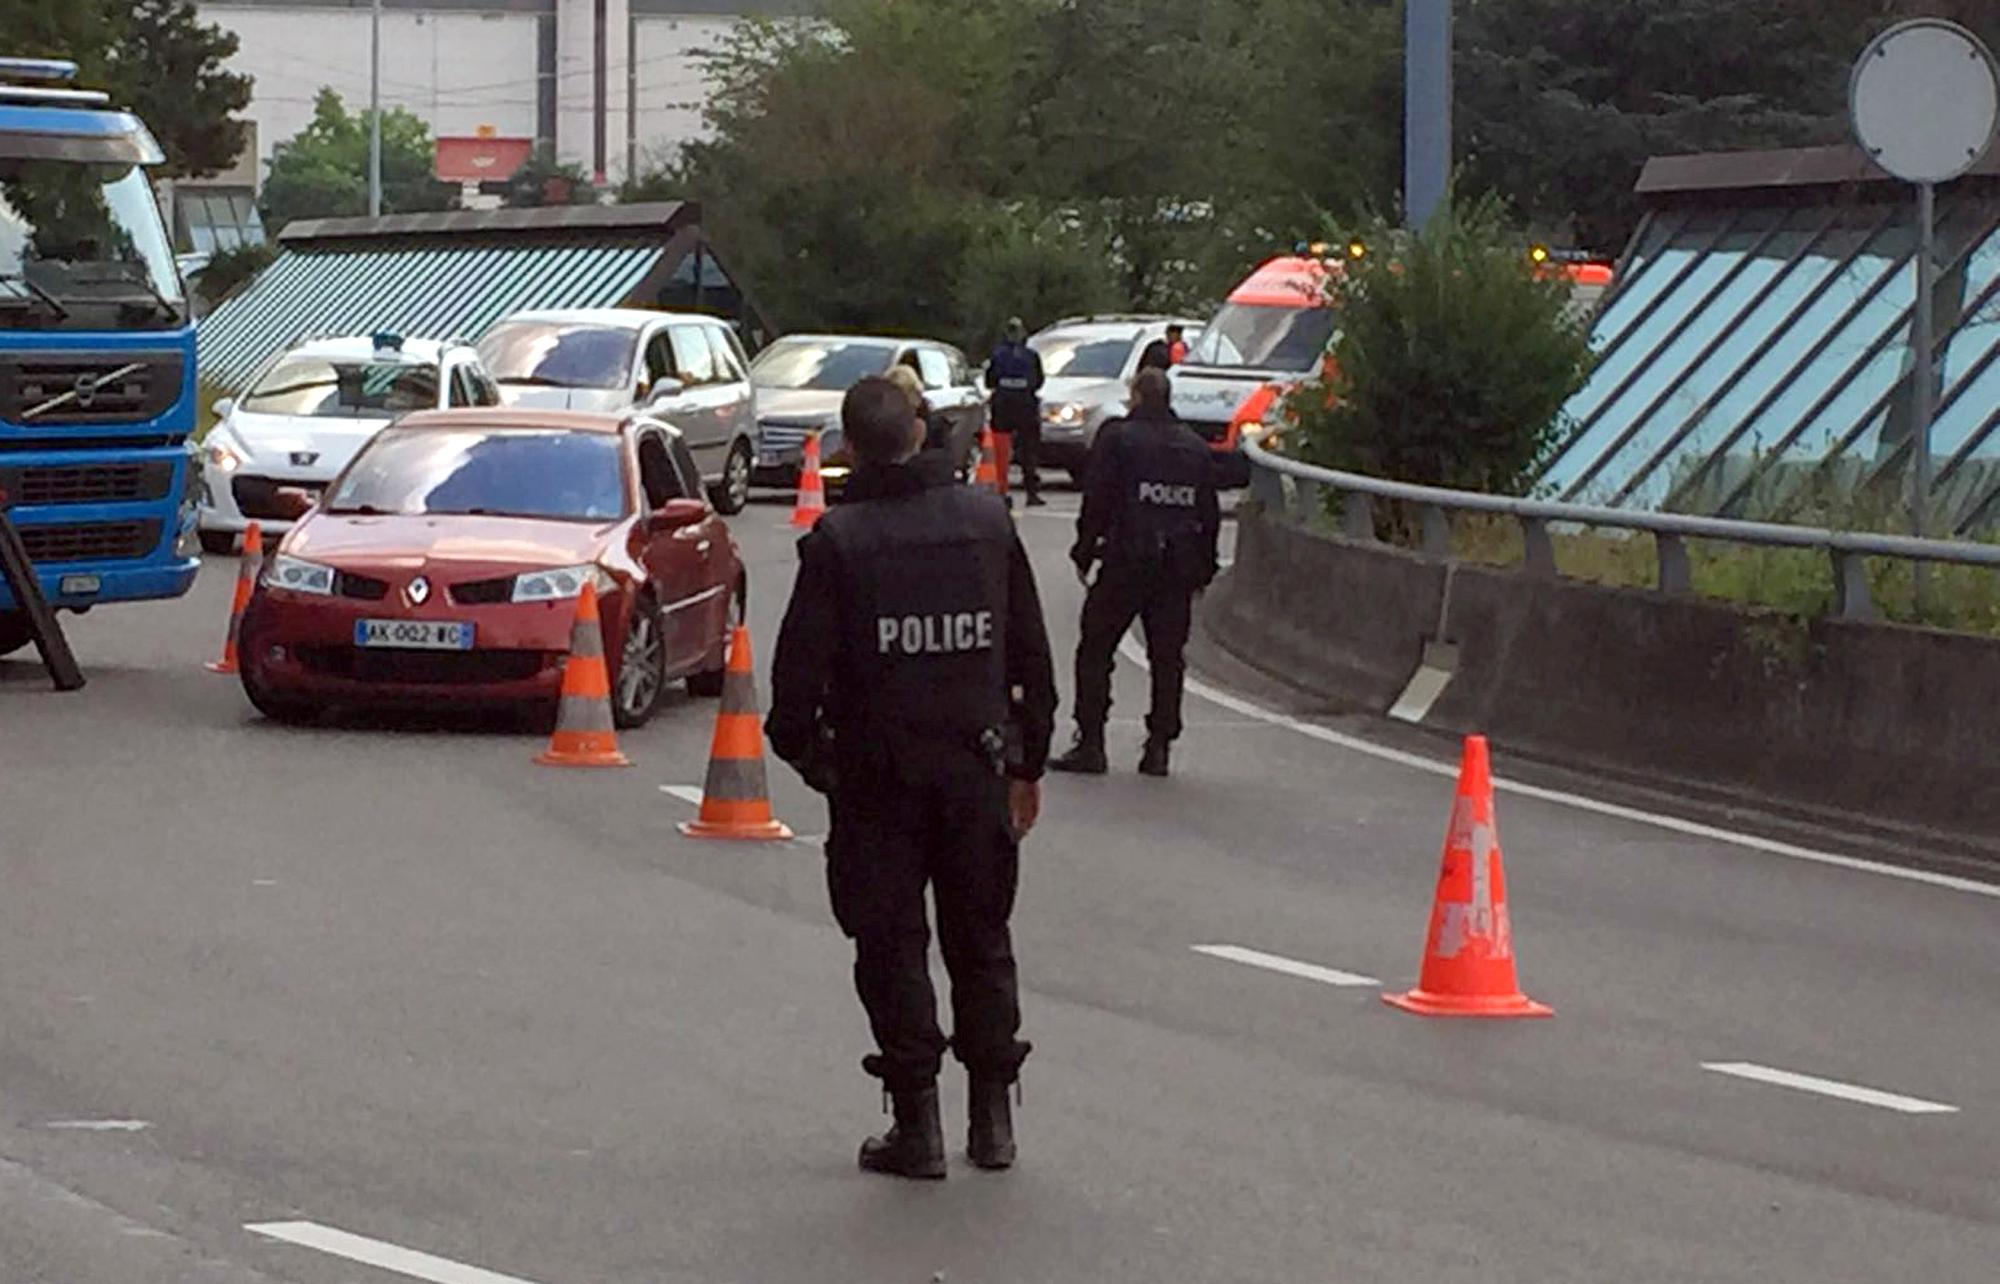 La police contrôle les véhicules en amont de l'aéroport, provoquant des bouchons. [REUTERS - Marina Depetris]